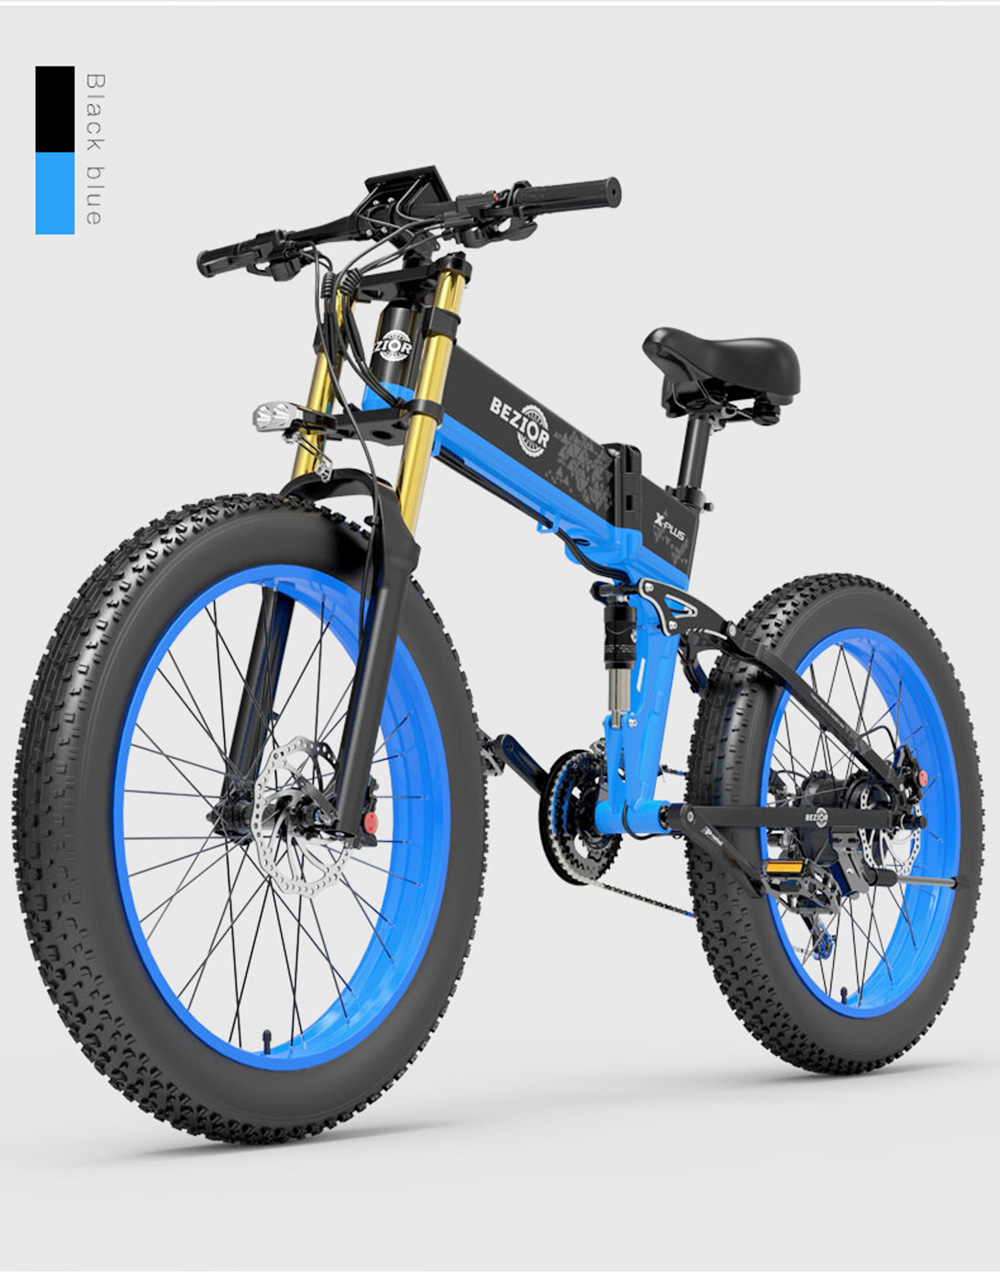 BEZIOR X-PLUS Vélo Électrique 1500W Moteur 48V 17.5Ah Batterie 26*4.0 Pneu VTT 40 km/h Vitesse Max 200kg Charge - Bleu